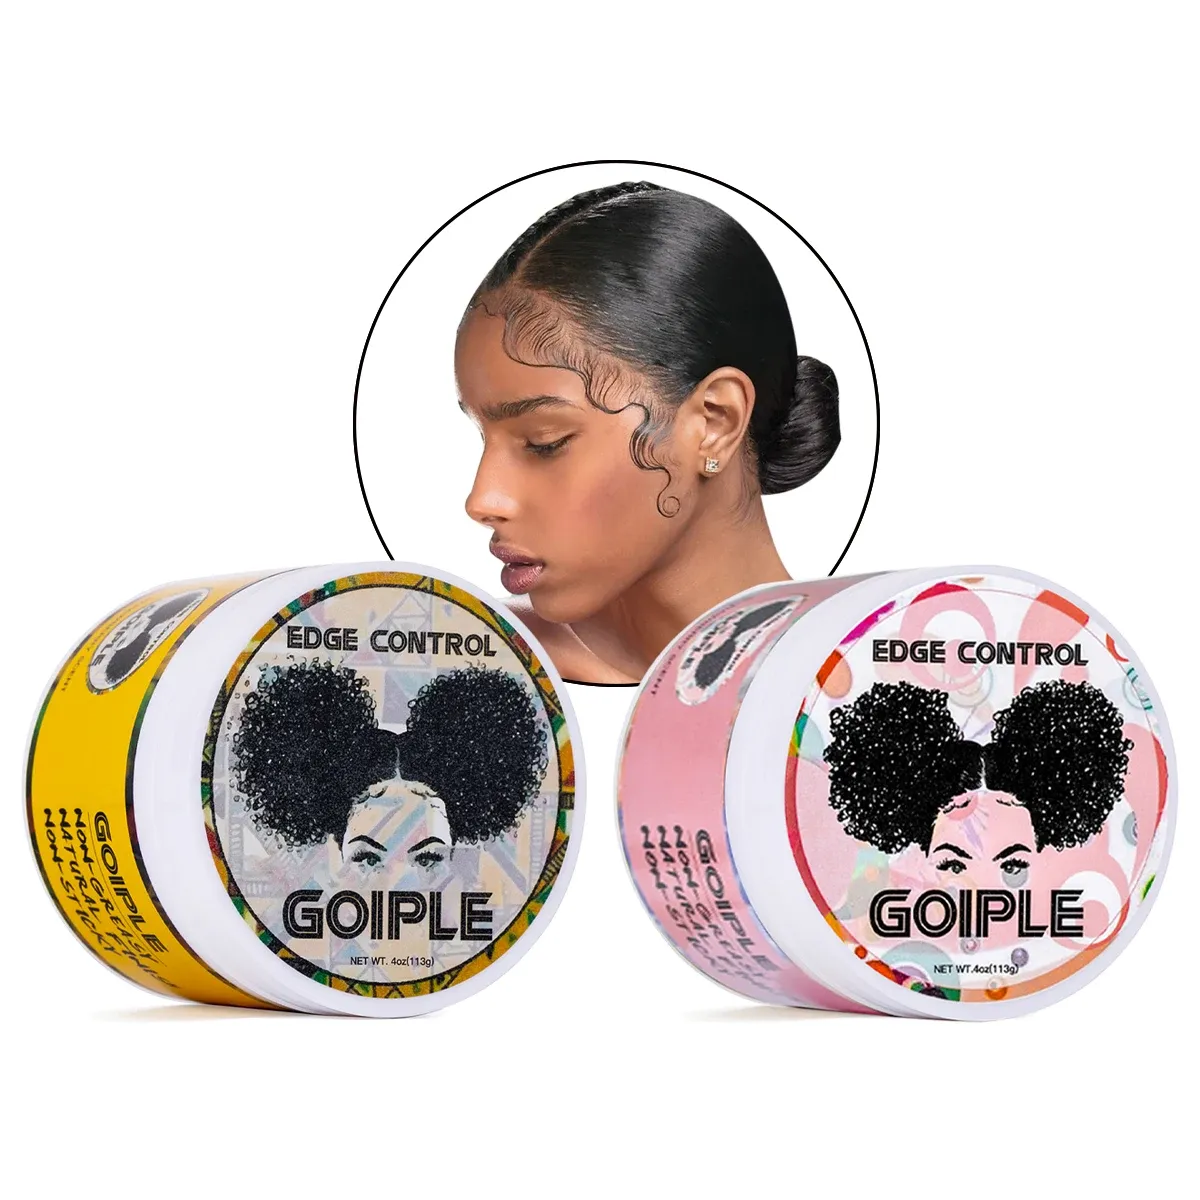 Producten Goiple Hair Styling Wax Cream voor vrouwen 24 uur sterke houd Nongreasy soepelere flyaway babyhaar pomade rand controlgel voor 4c